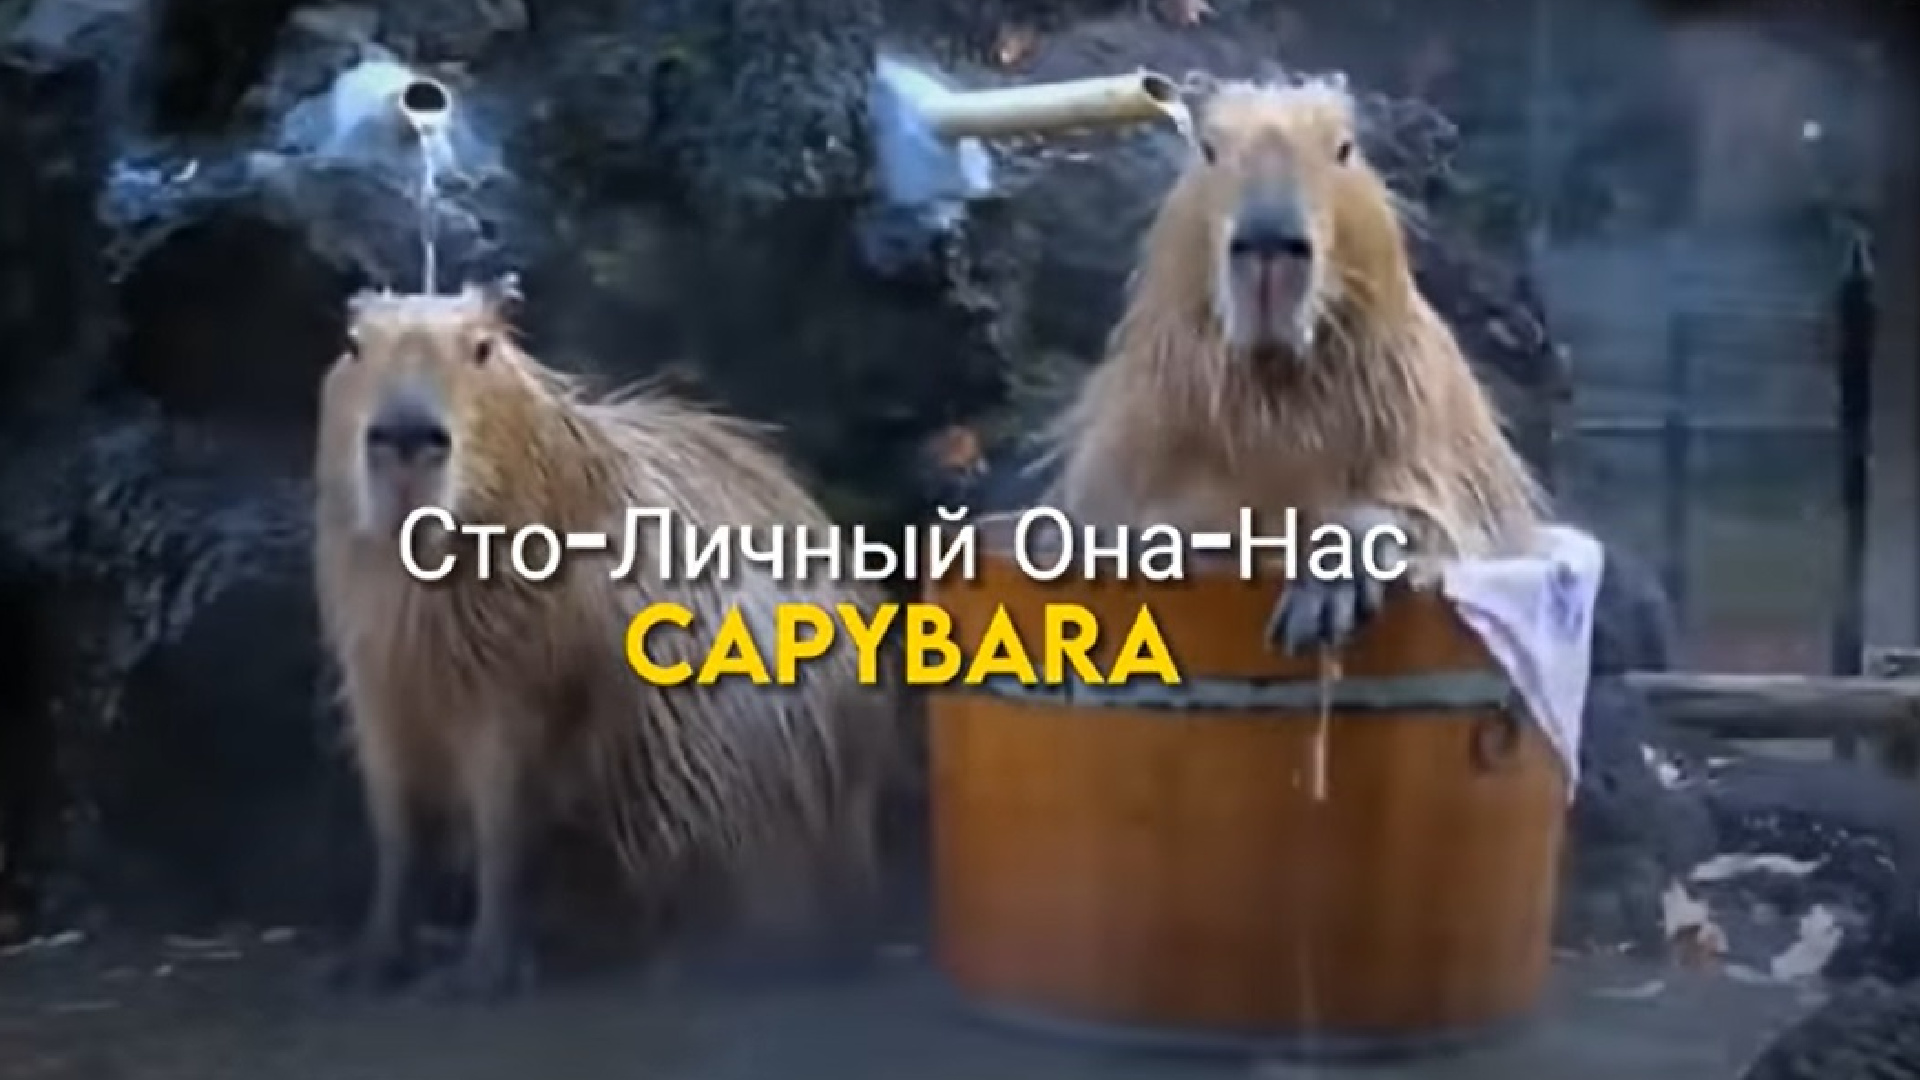 The song 'Capybara'